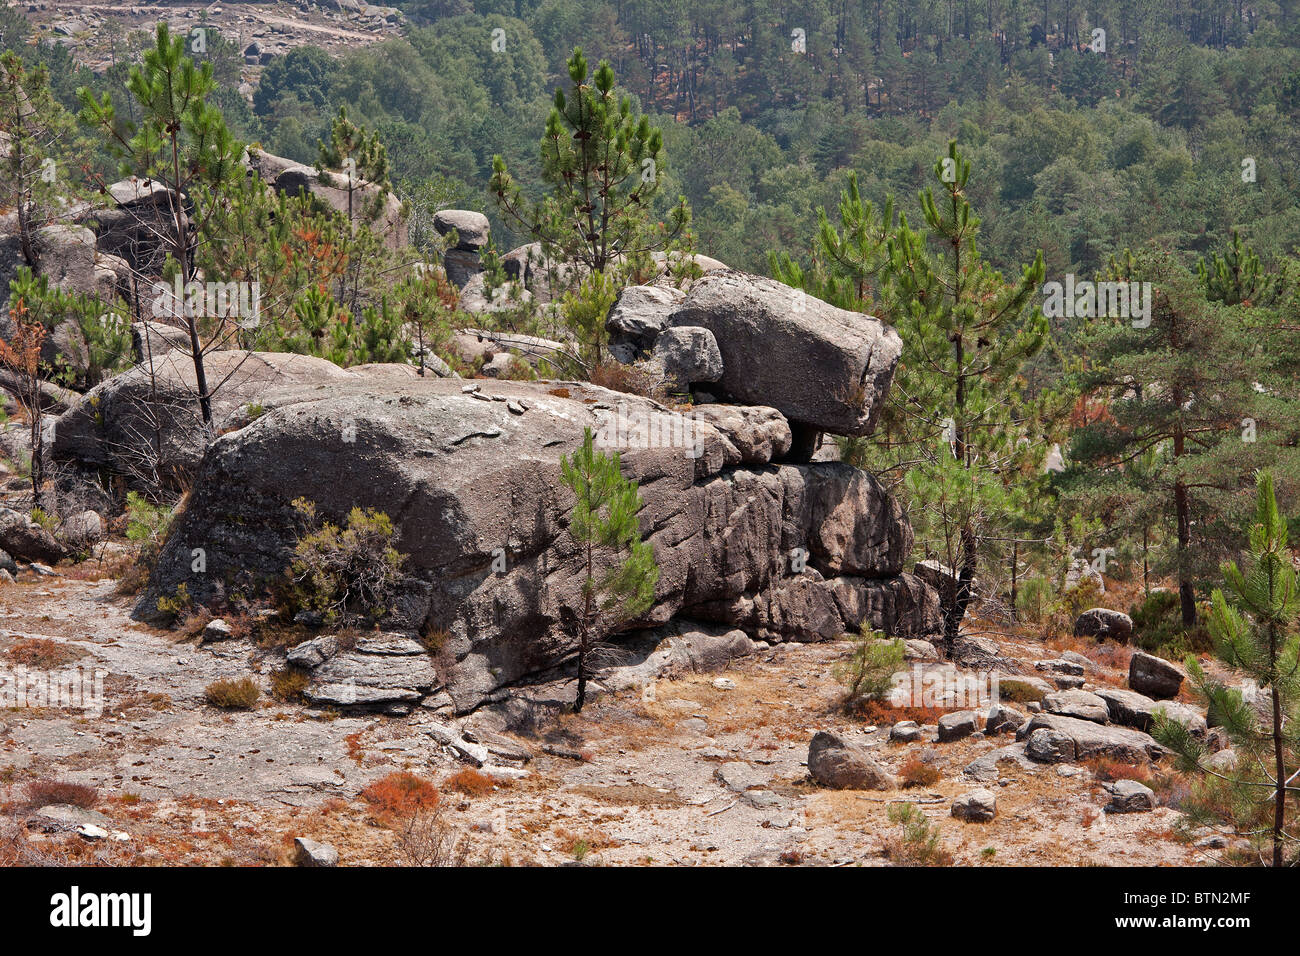 Las rocas de la Serra do Gerês en Portugal que parece el producto perro AIBO de Sony. Foto de stock